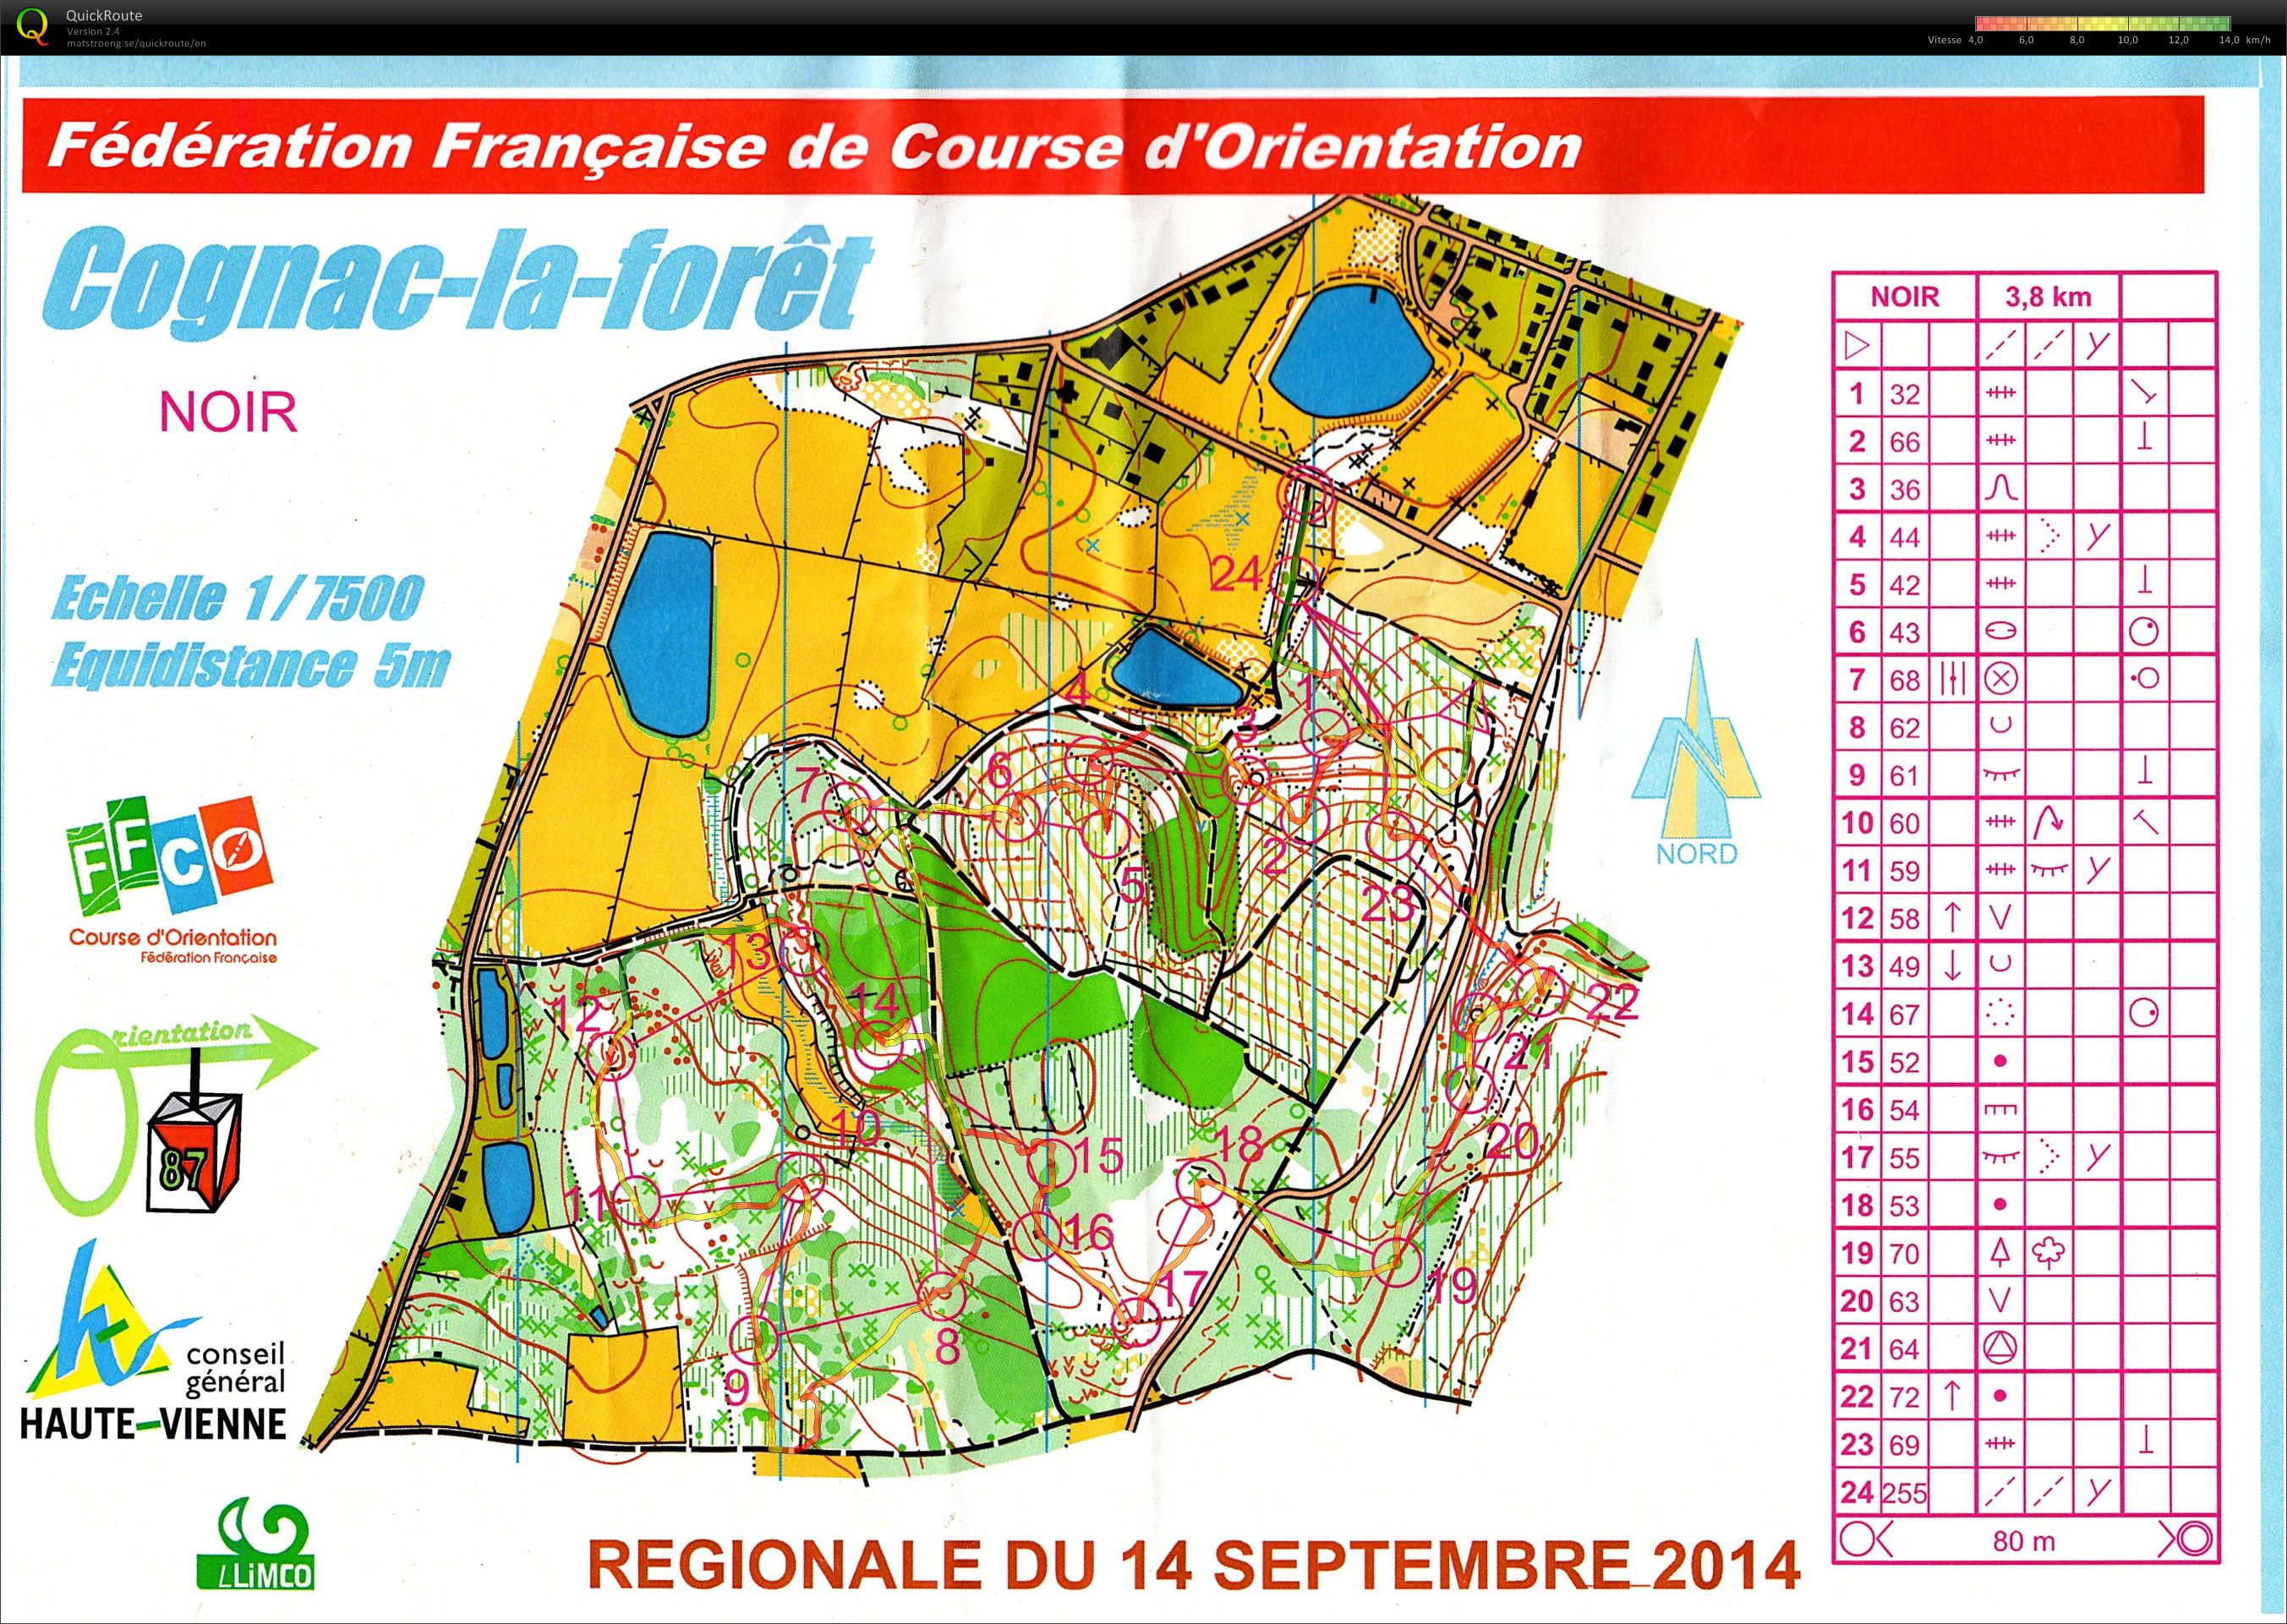 Régionale Limousin MD (14.09.2014)